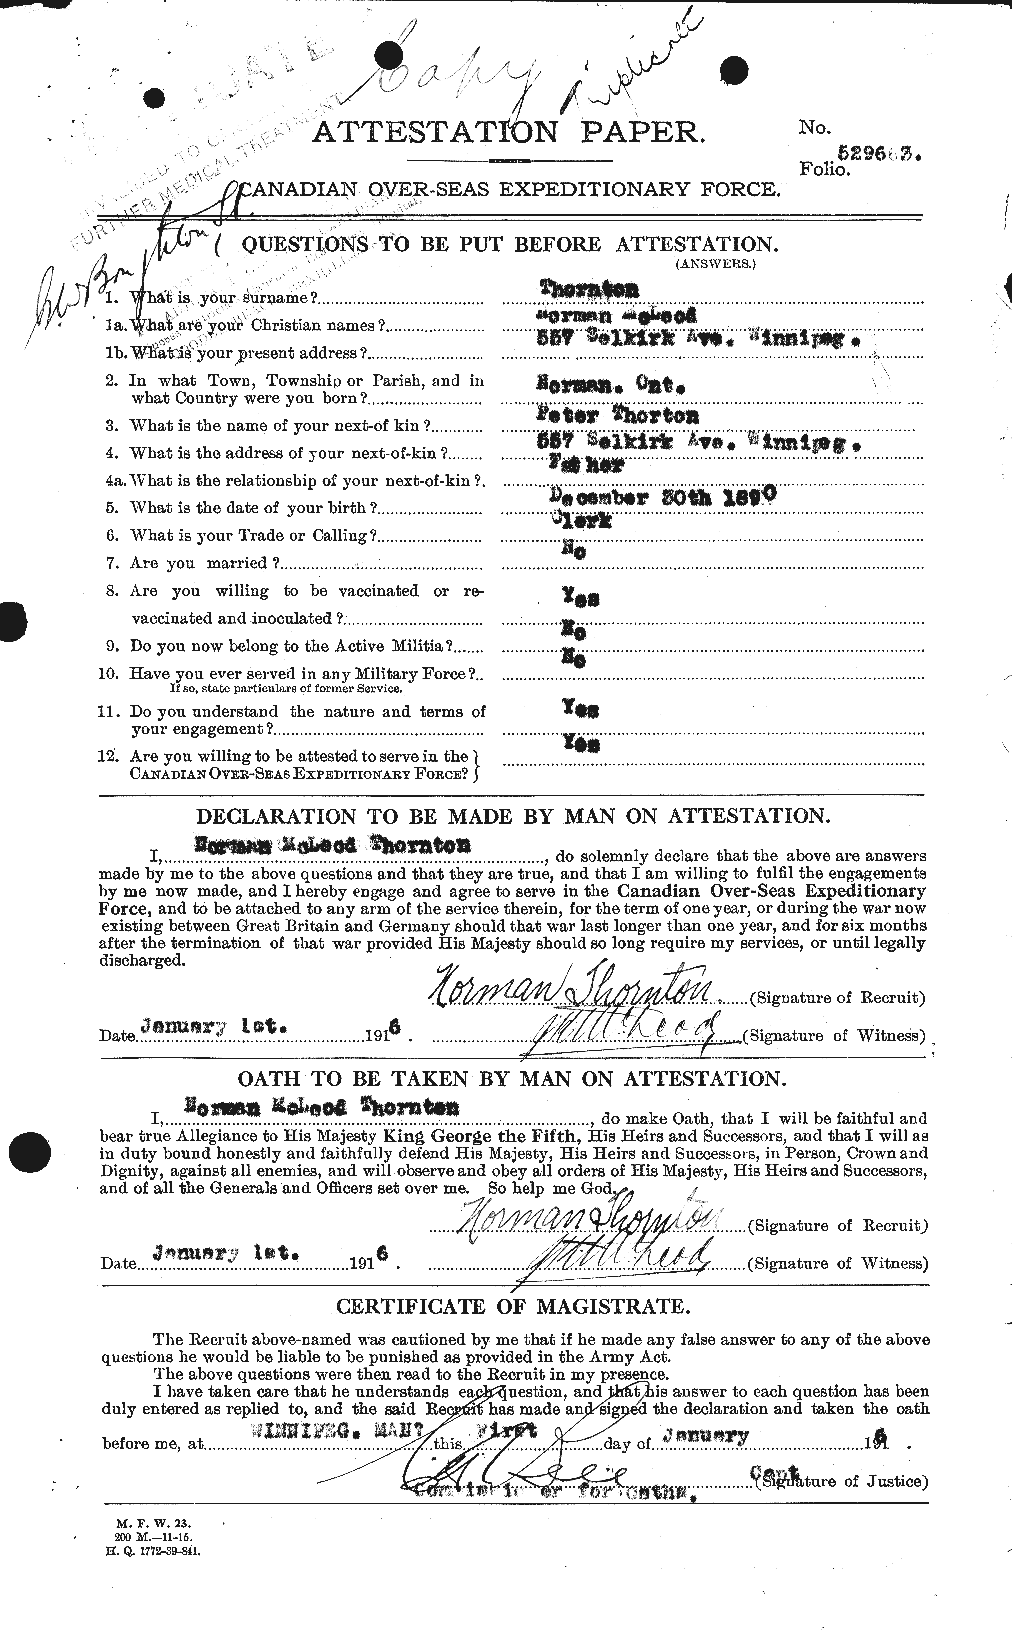 Dossiers du Personnel de la Première Guerre mondiale - CEC 636866a